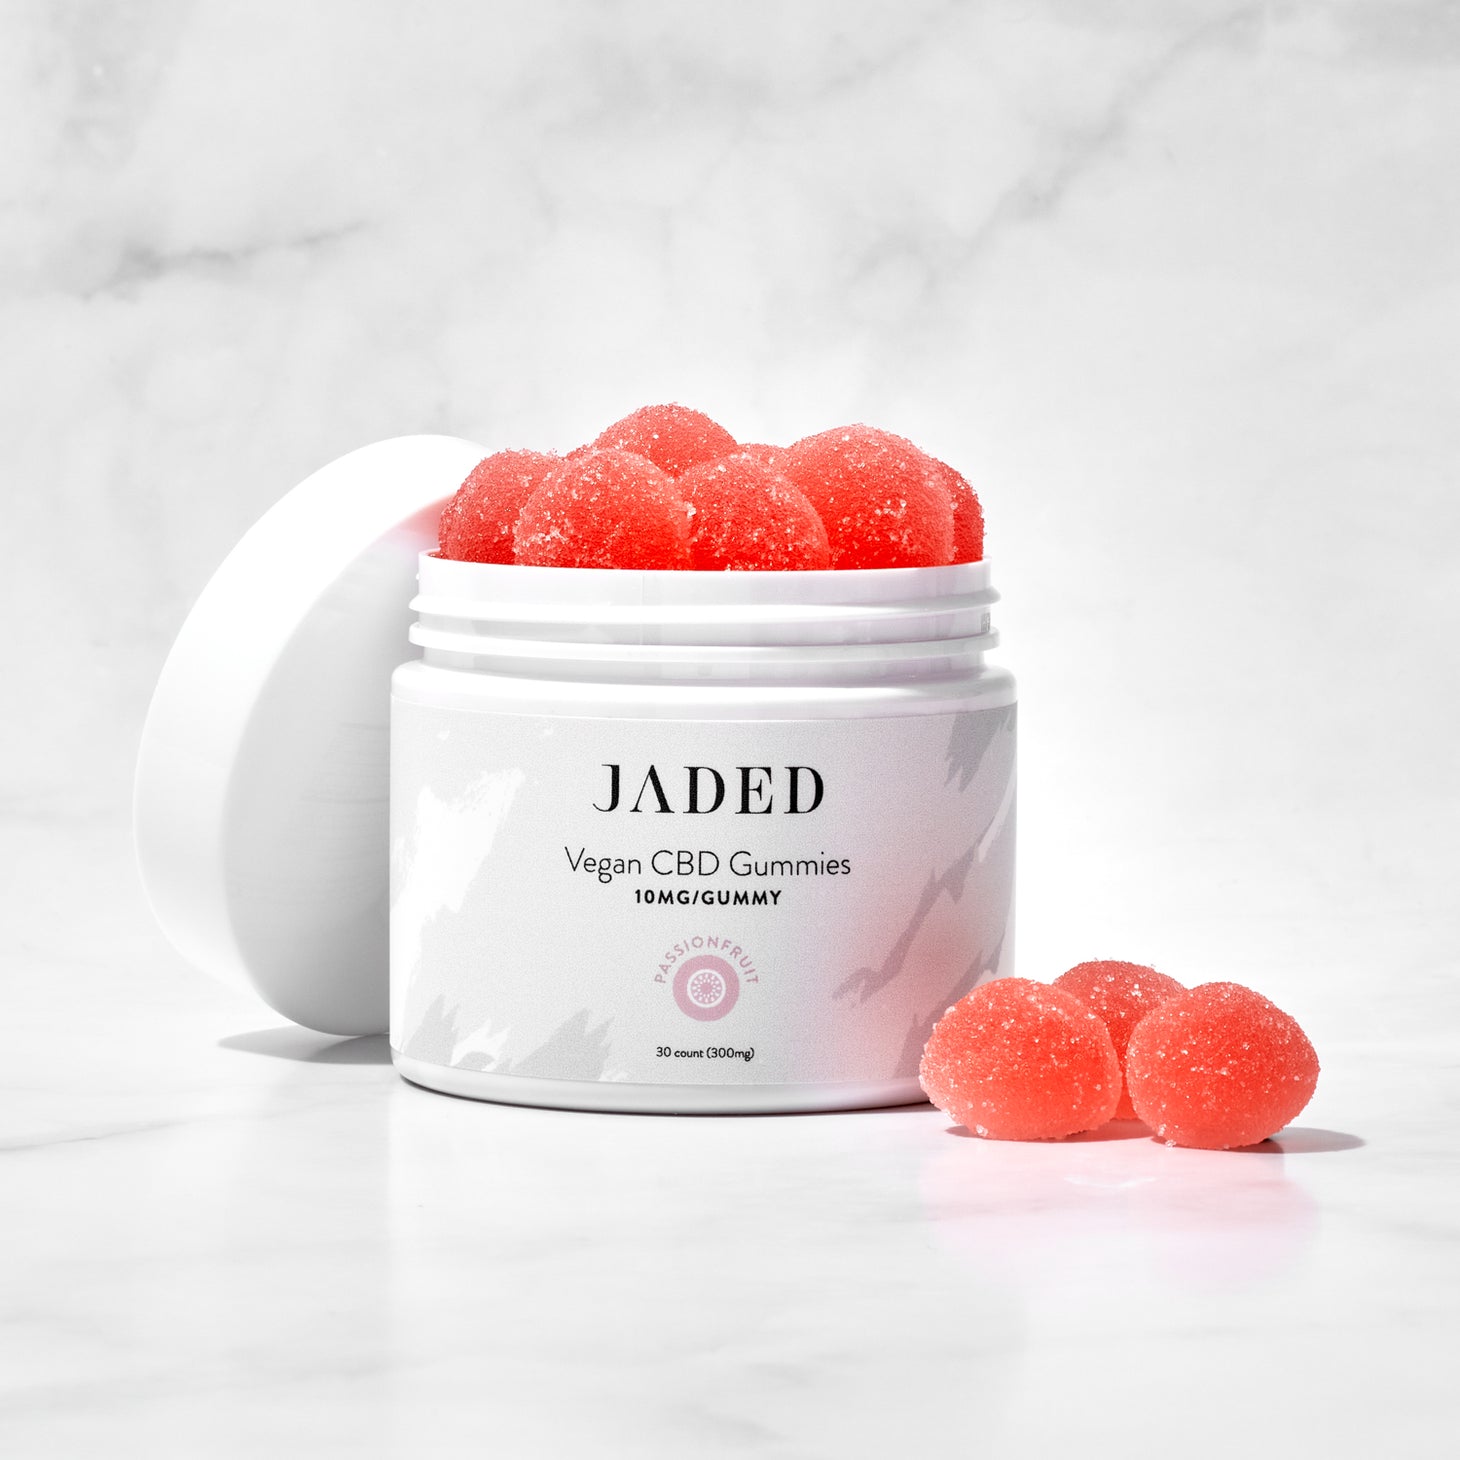 JADED Vegan CBD Gummies Passionfruit 30 count Jar